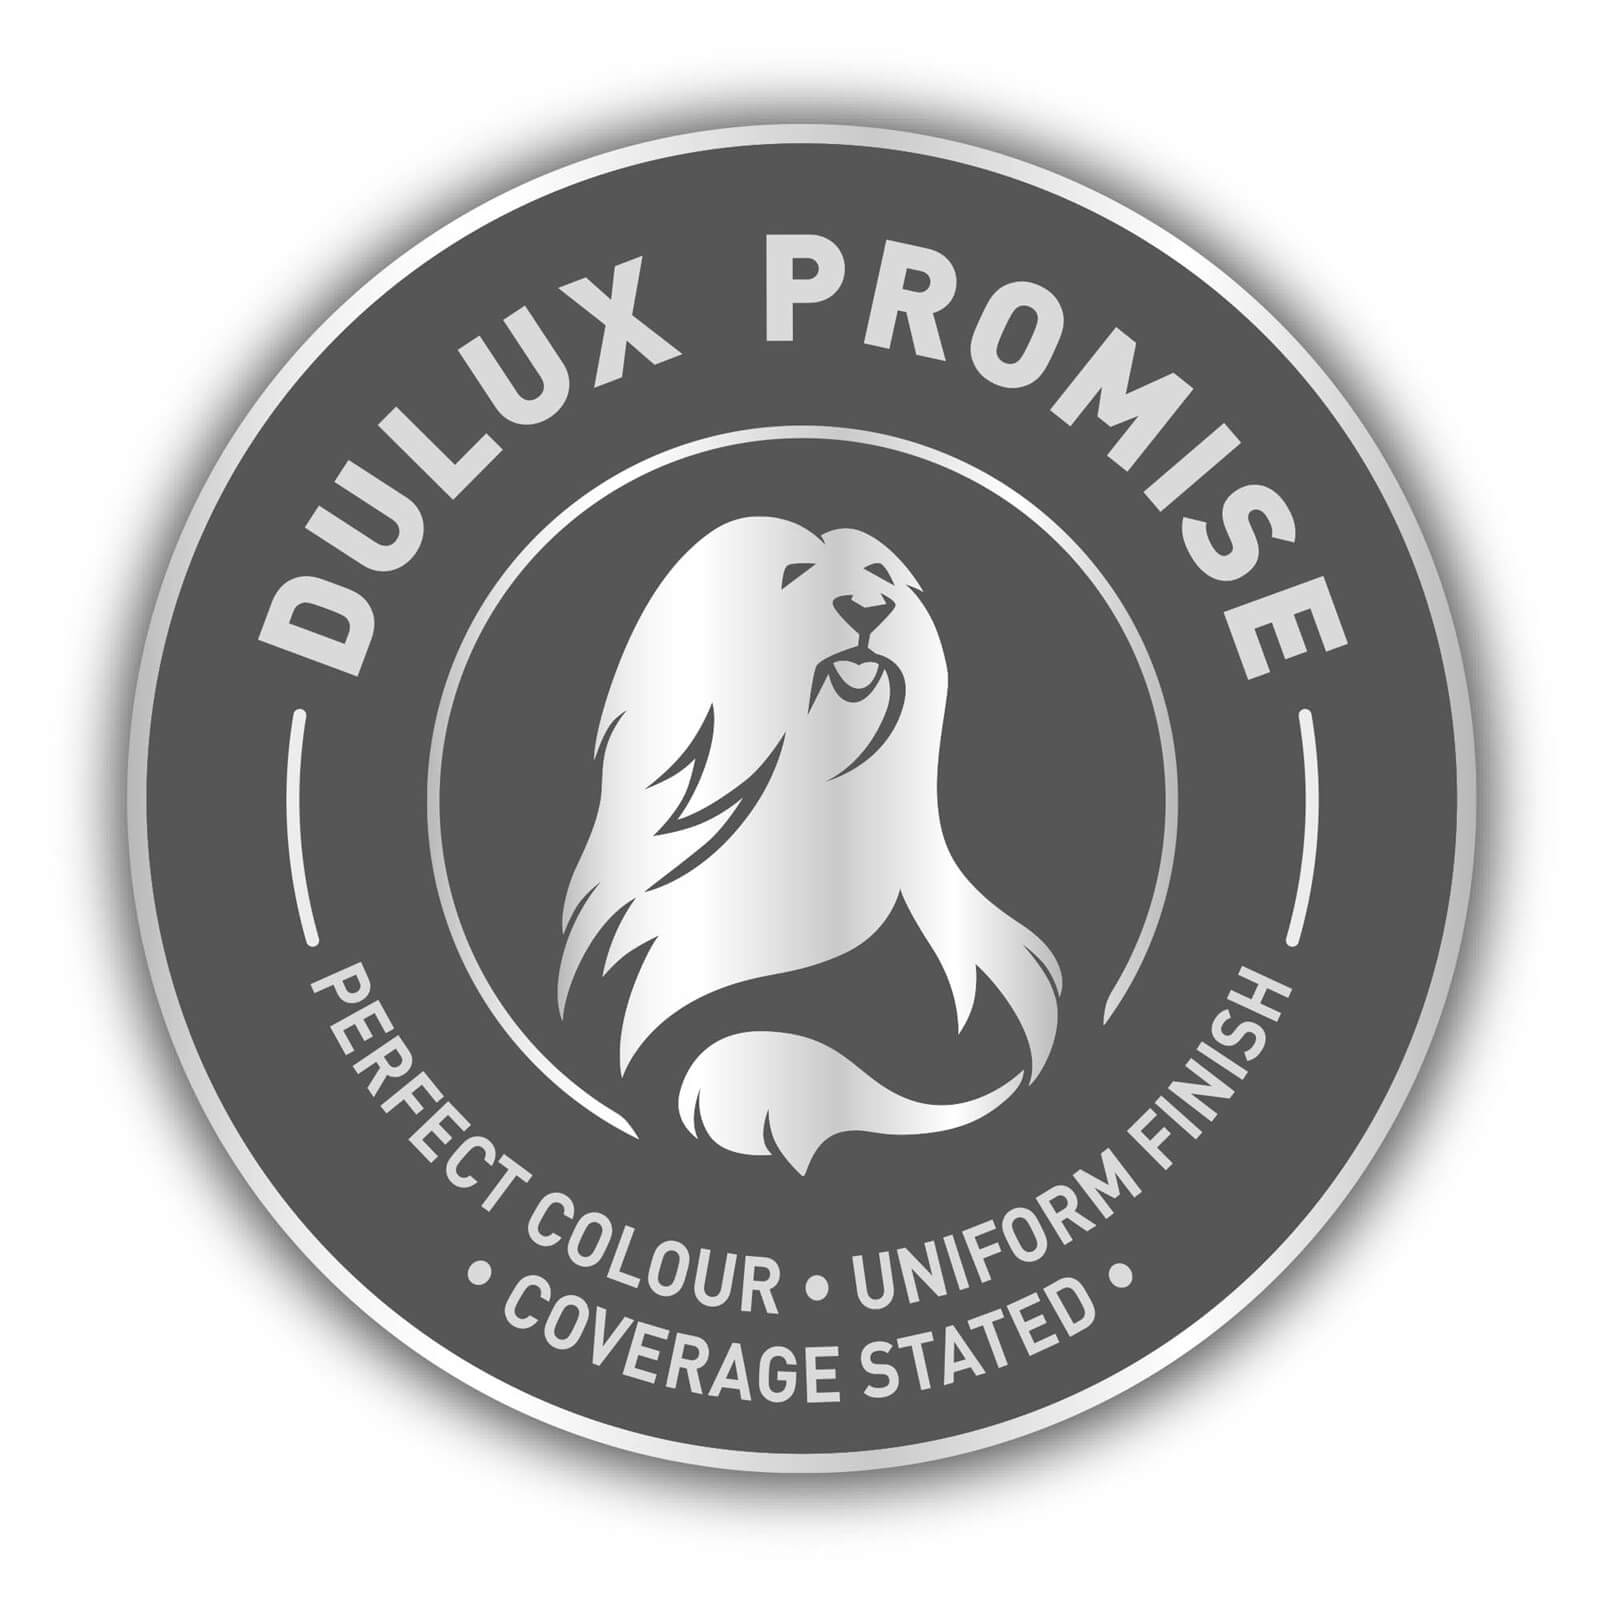 Dulux Silk Emulsion Paint Calico - 5L